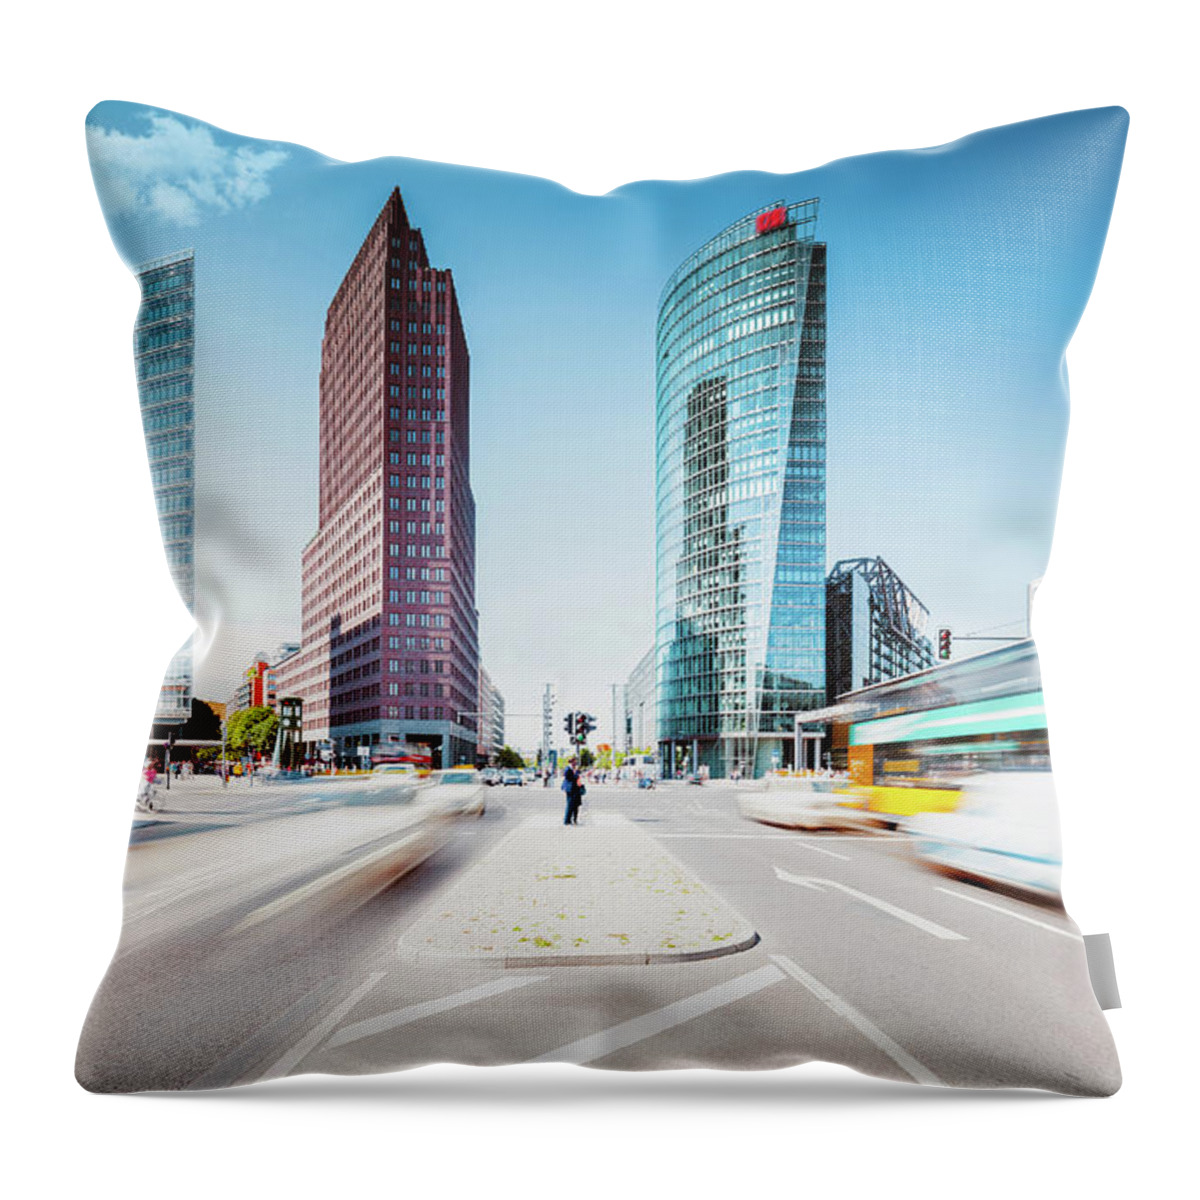 Berlin Throw Pillow featuring the photograph Postdamer Platz ,summer In The City by @by Feldman 1